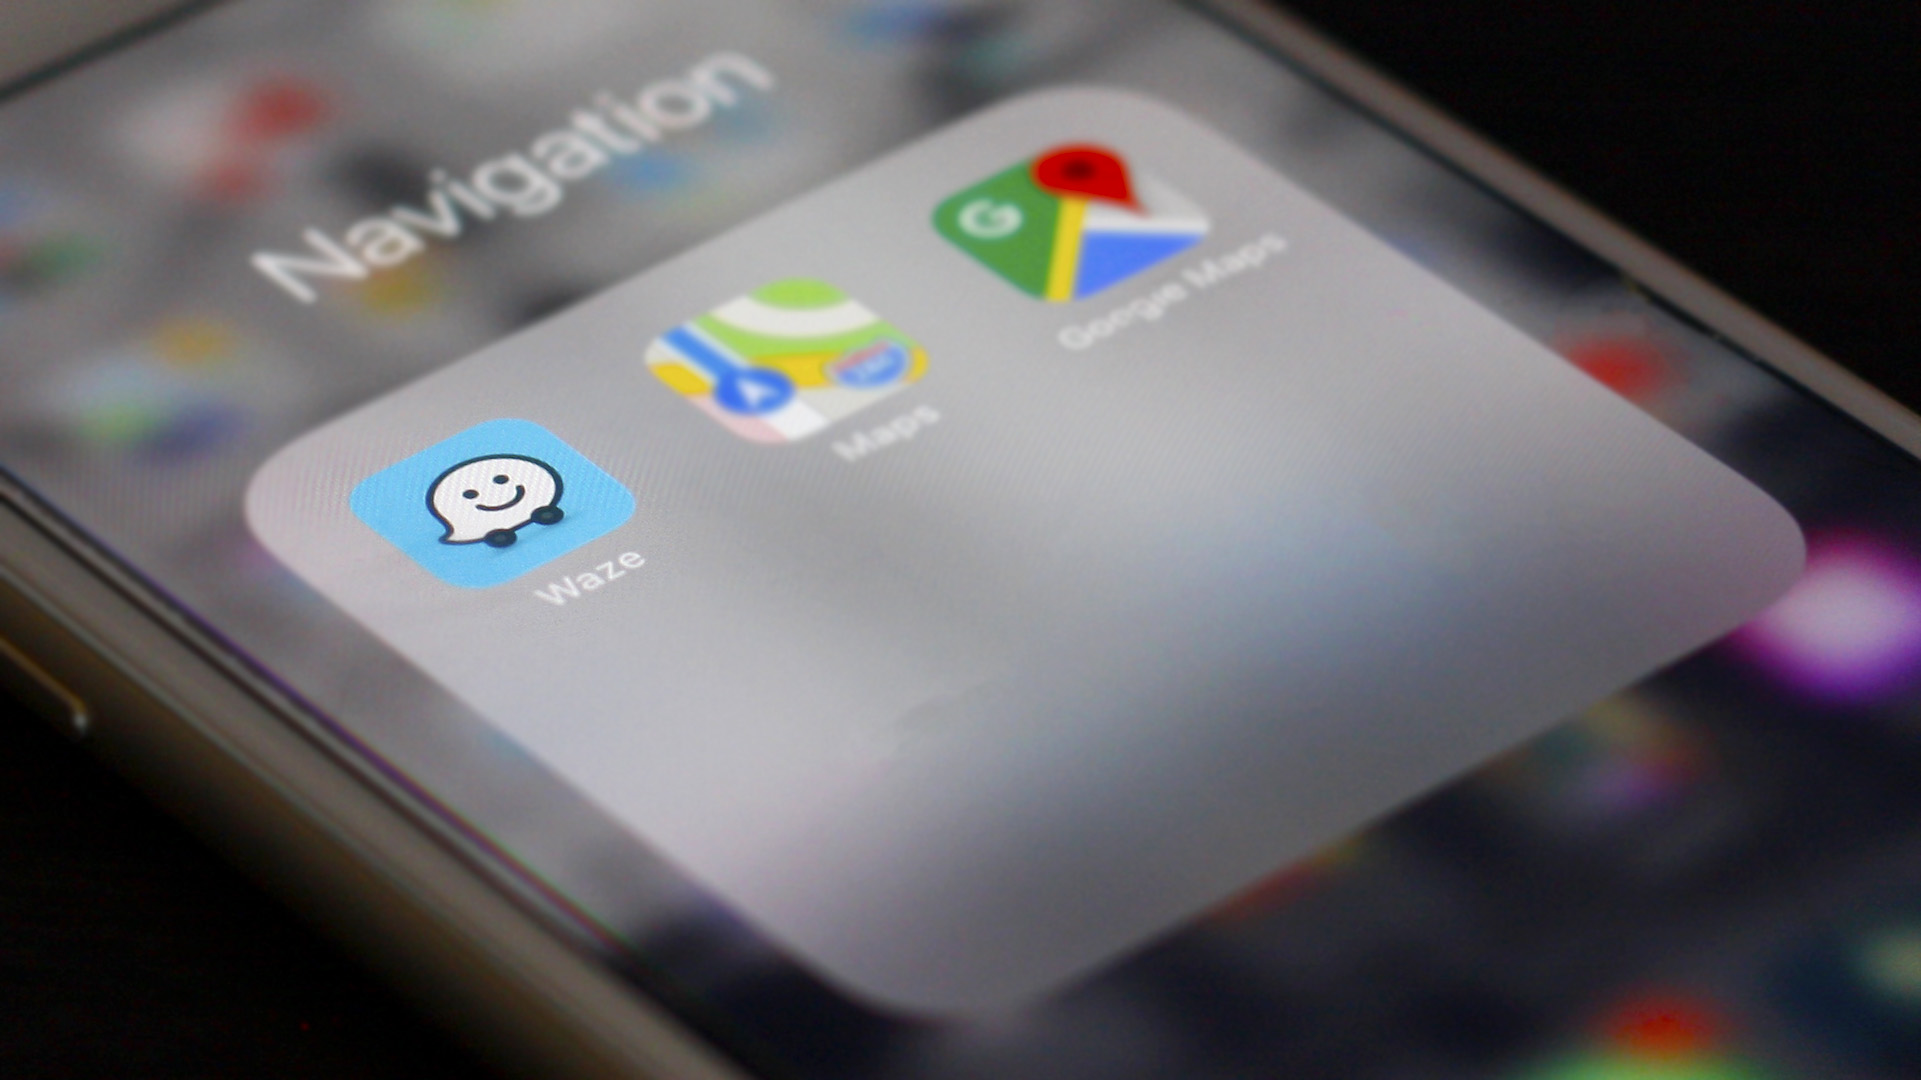 Photo of Waze icon on iPhone